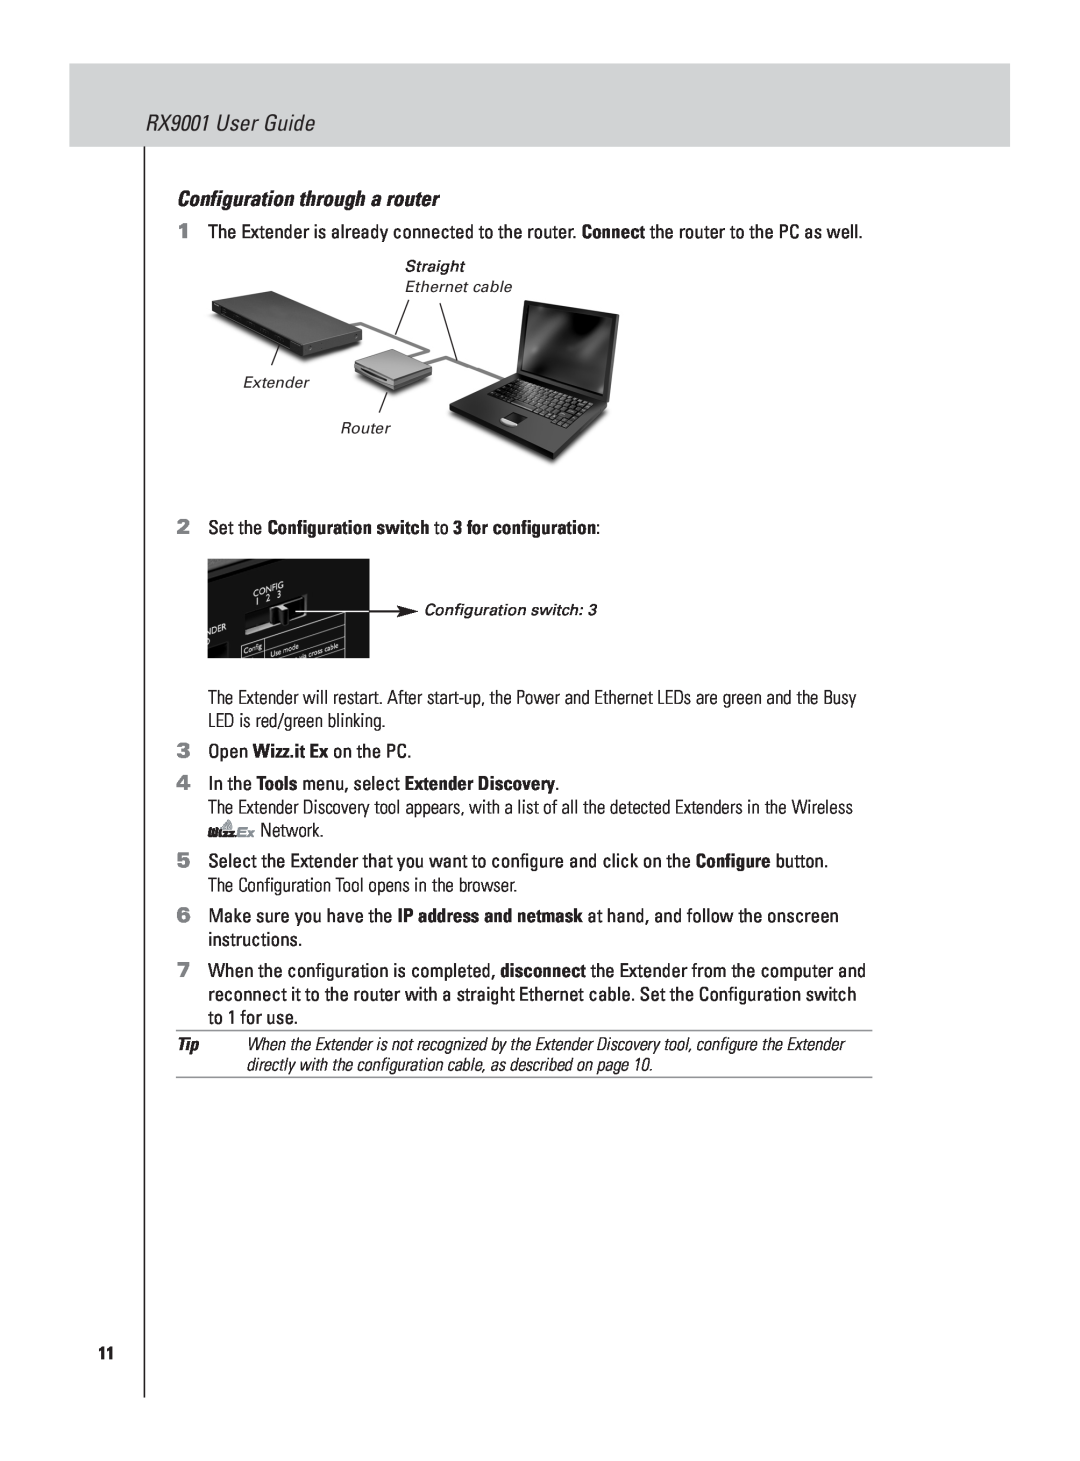 Marantz manual Configuration through a router, Set the Configuration switch to 3 for configuration, RX9001 User Guide 